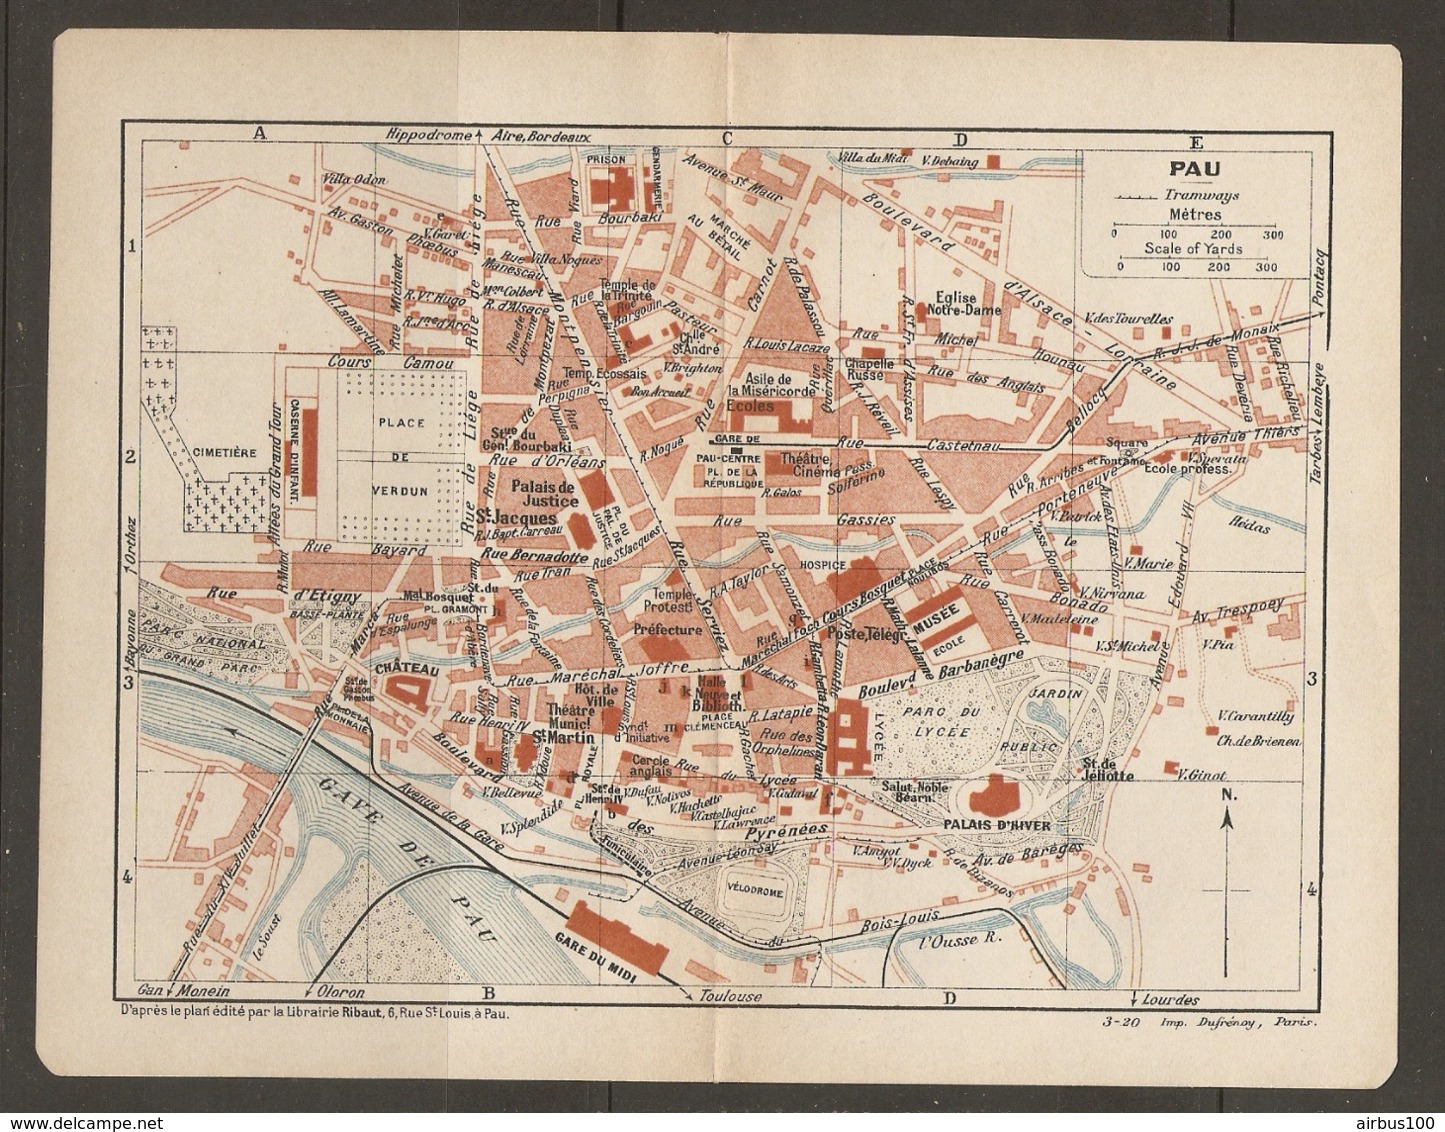 CARTE PLAN 1920 - PAU PALAIS D'HIVER GARE DE PAU CENTRE PRISON HALLES CINEMA PLACE De VERDUN - Topographical Maps